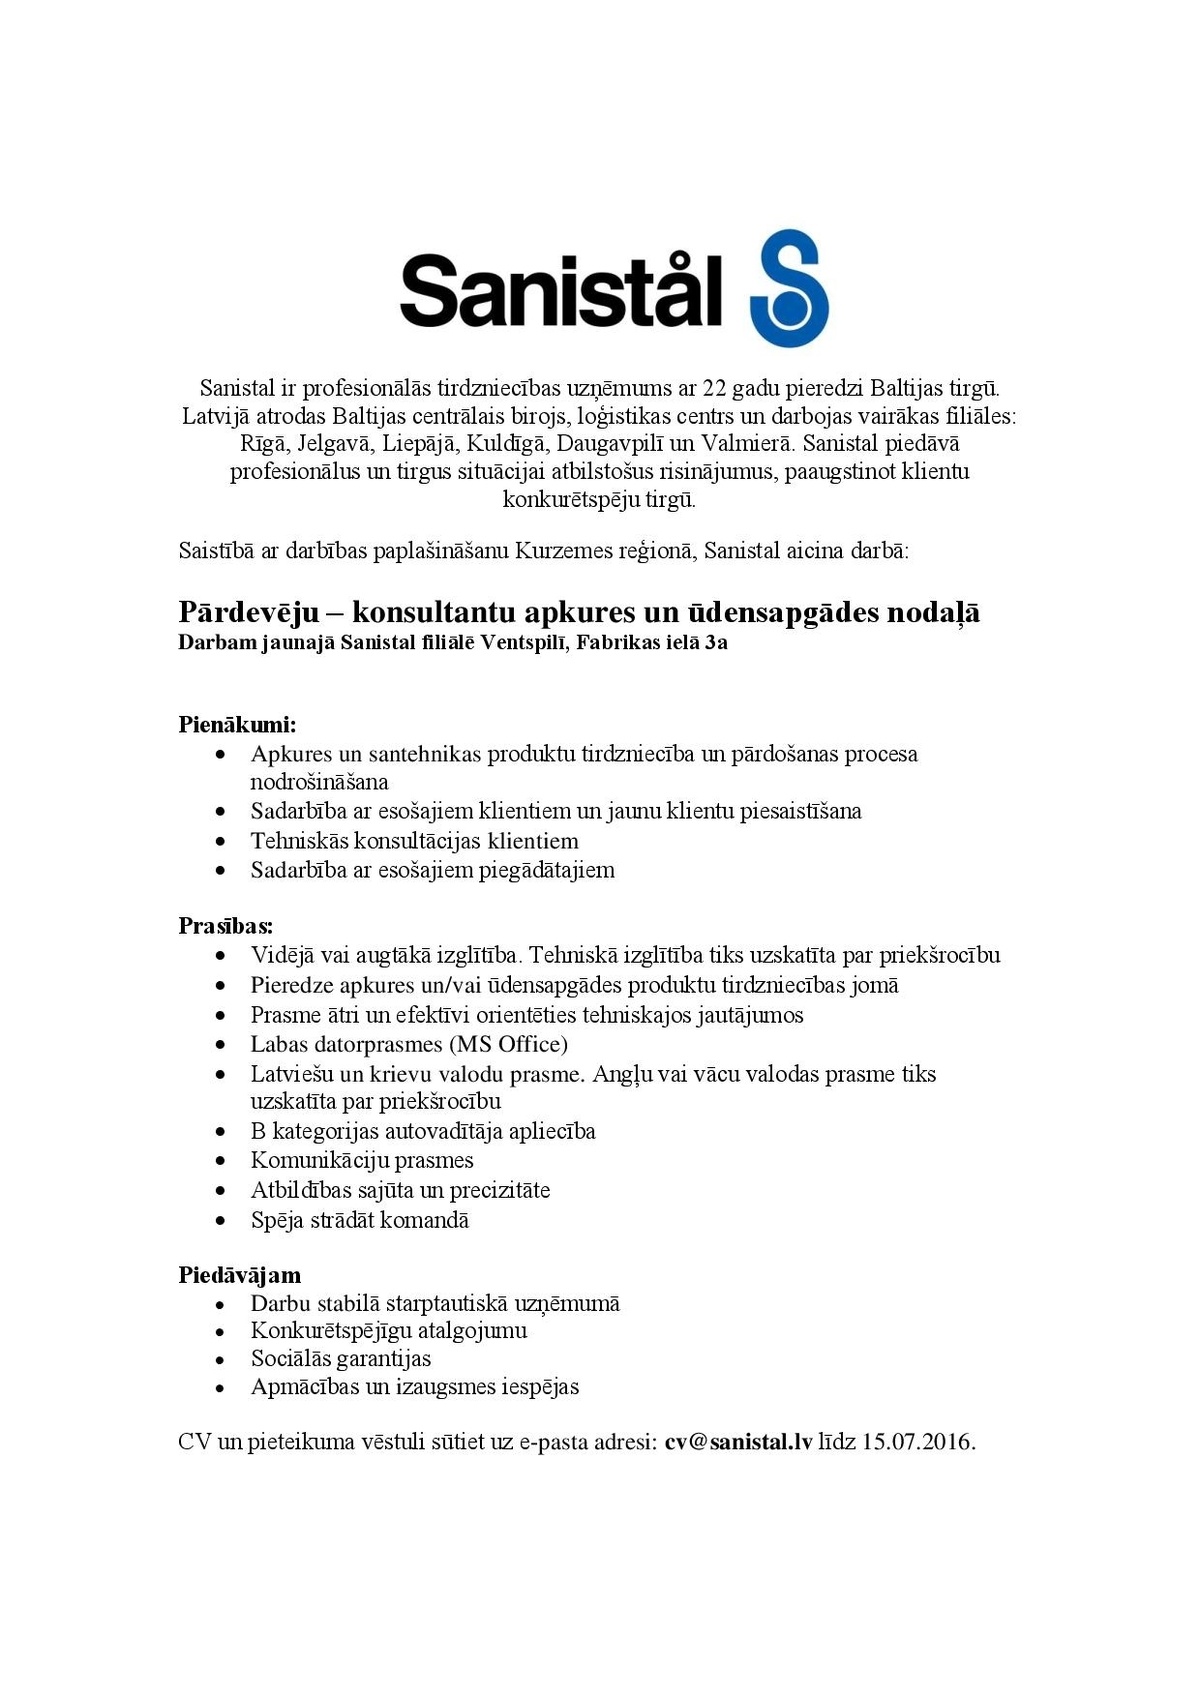 Sanistal, SIA Pārdevējs/-a – konsultants/-e apkures un ūdensapgādes nodaļā 